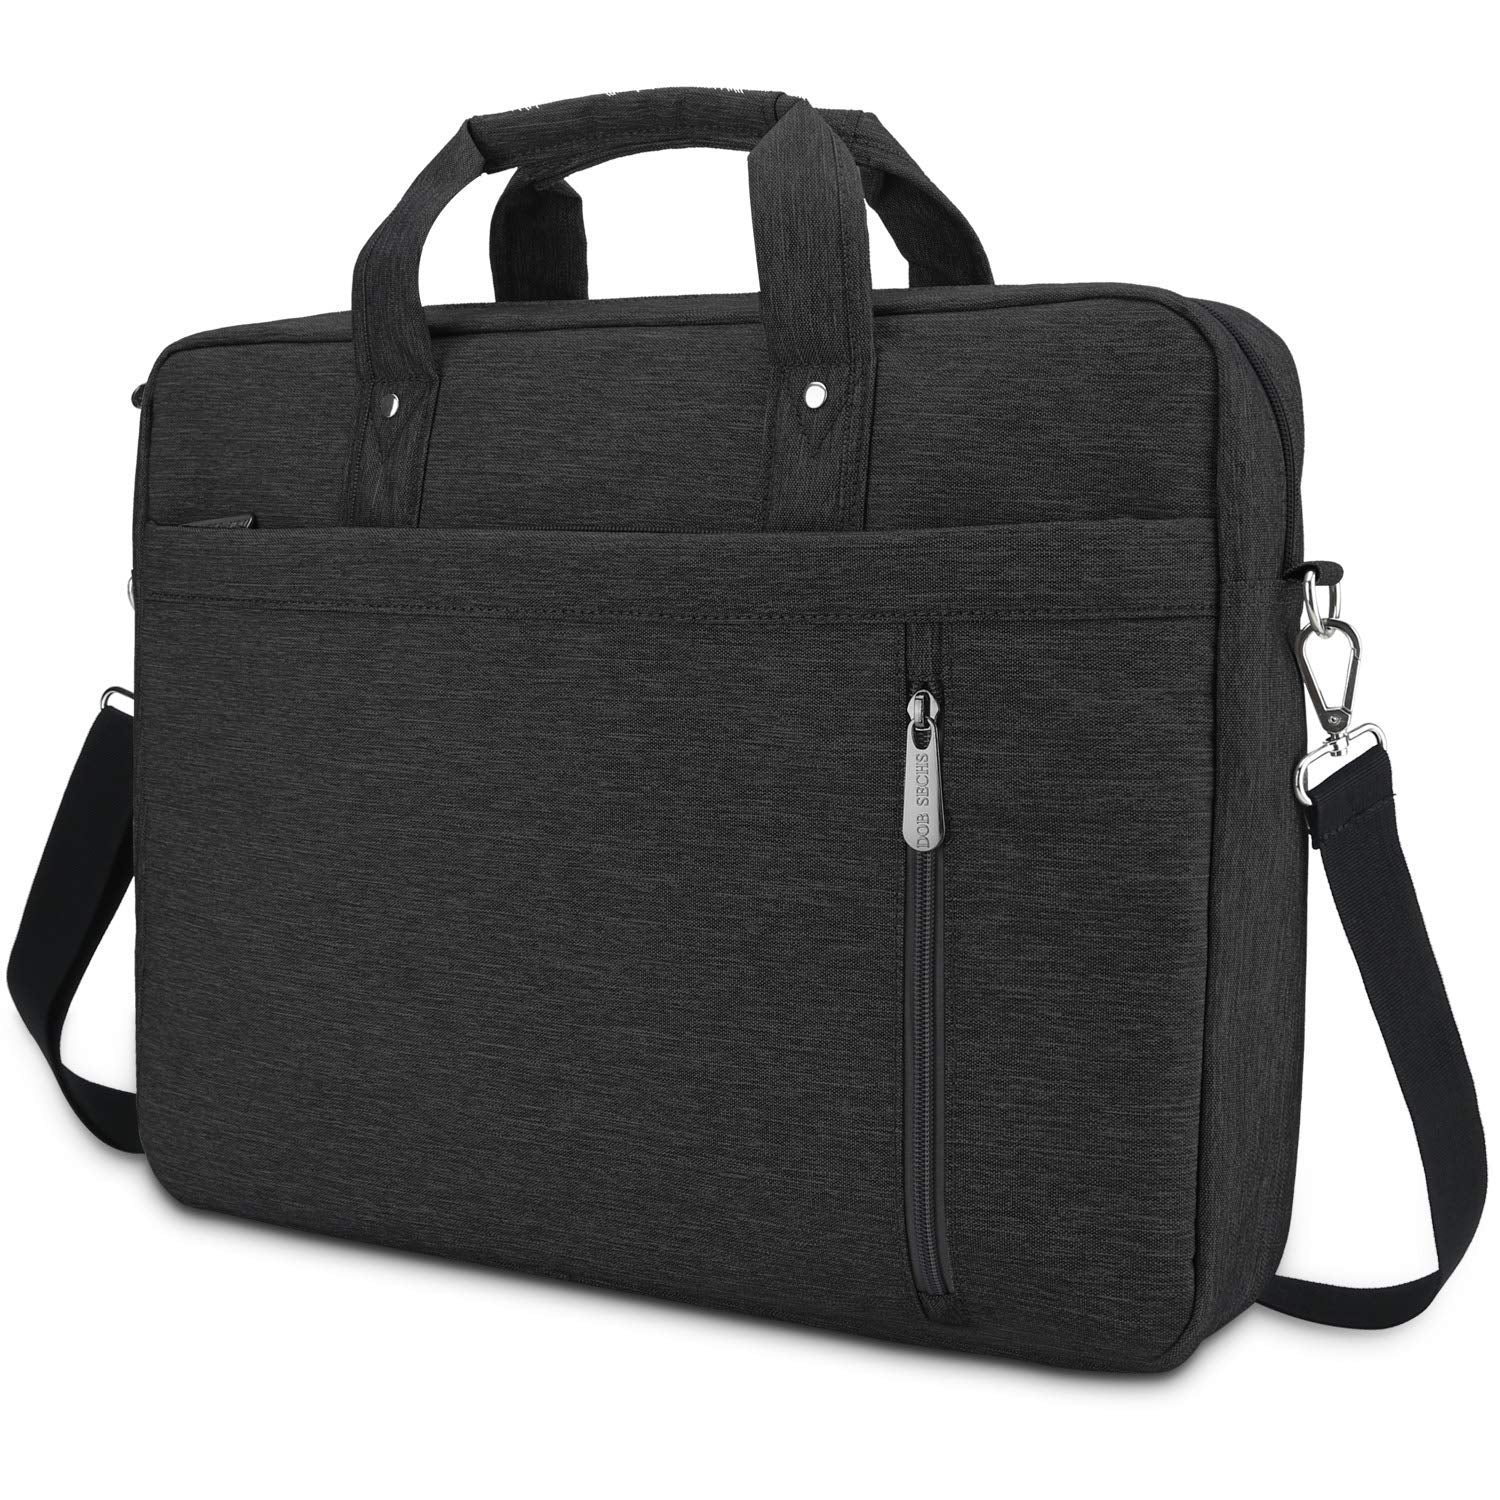 DOB SECHS Laptop Bag Case 16'' 17'' 17.3 Inches Computer Bag Shockproof Briefcase Shoulder Messenger Bag Waterproof Business with Tablet Pocket for Men Women Travel School Lawyer, Black